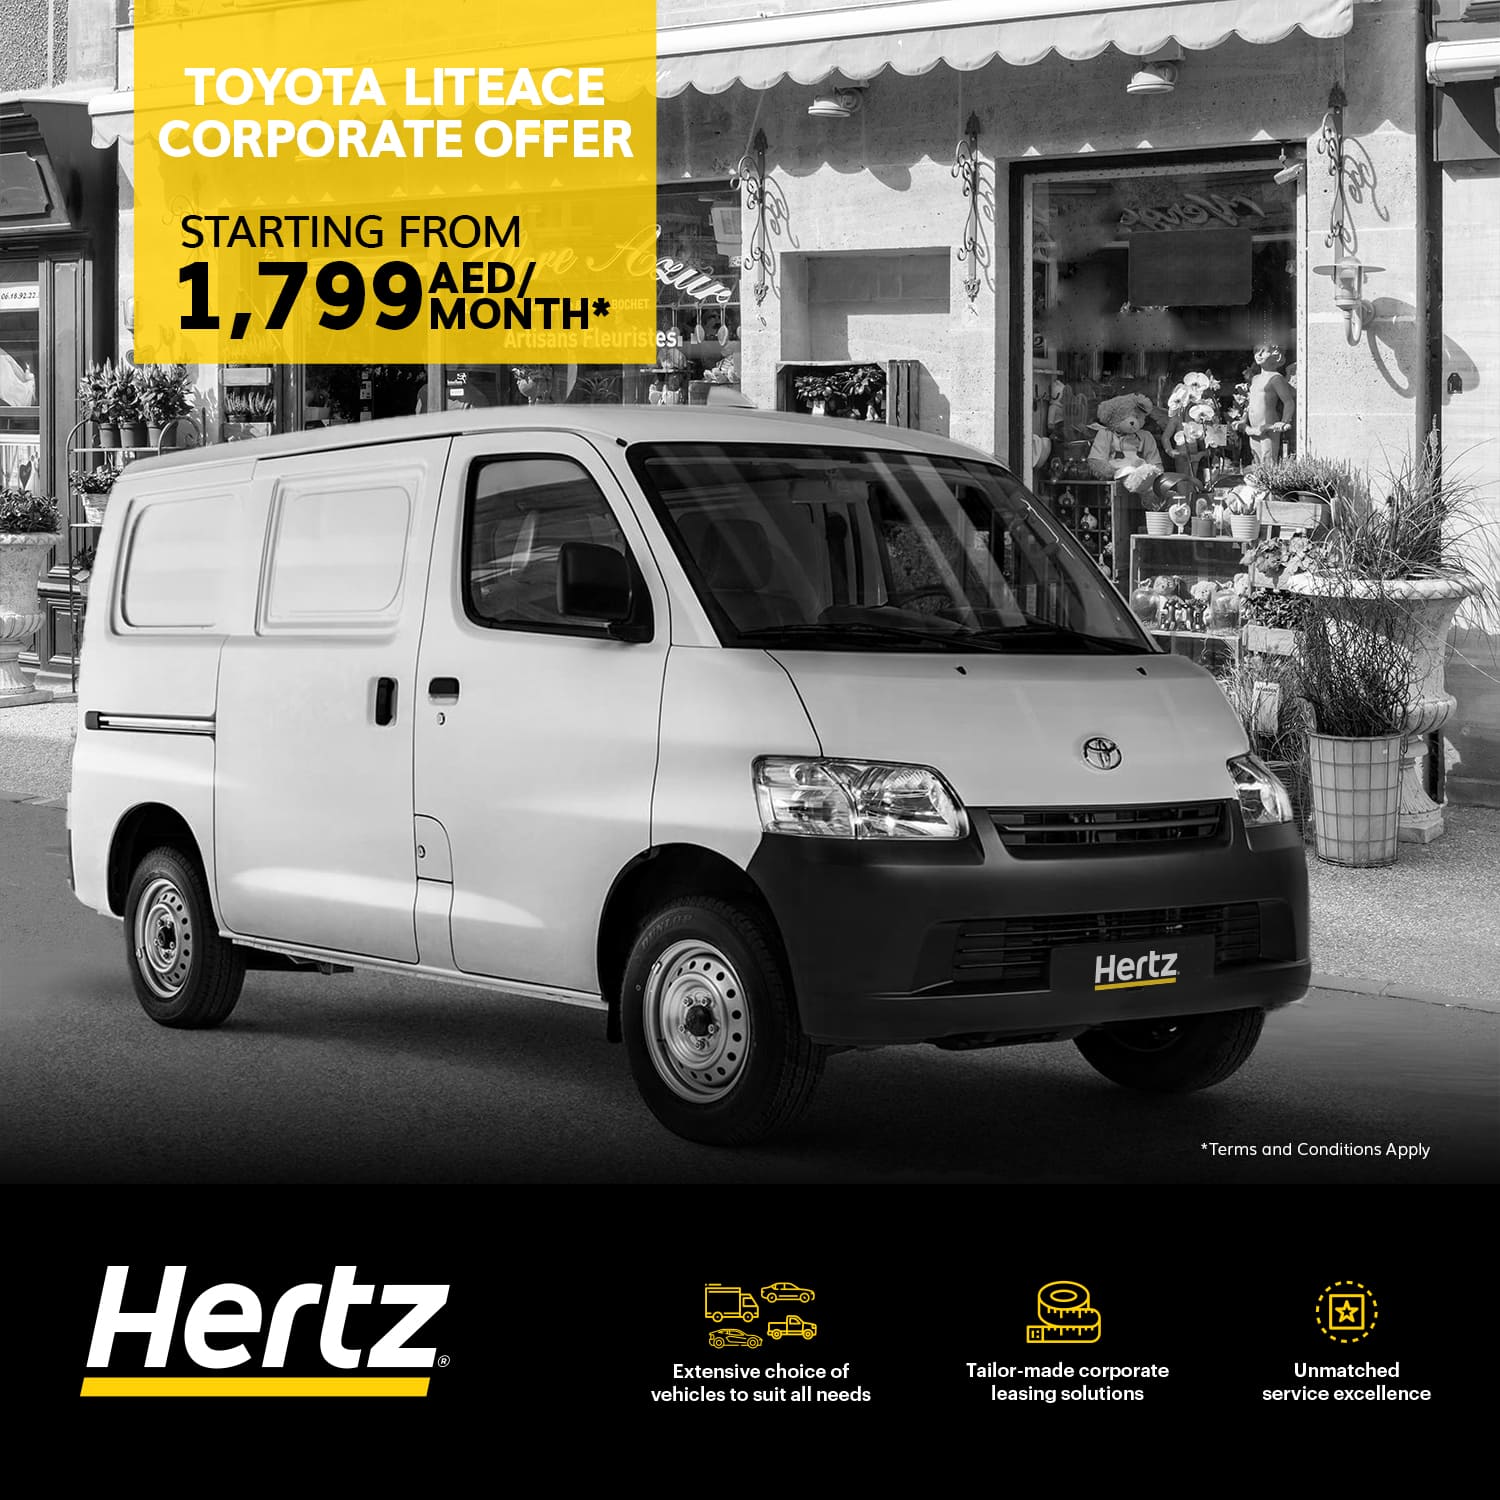 Toyota LiteAce Corporate Offer